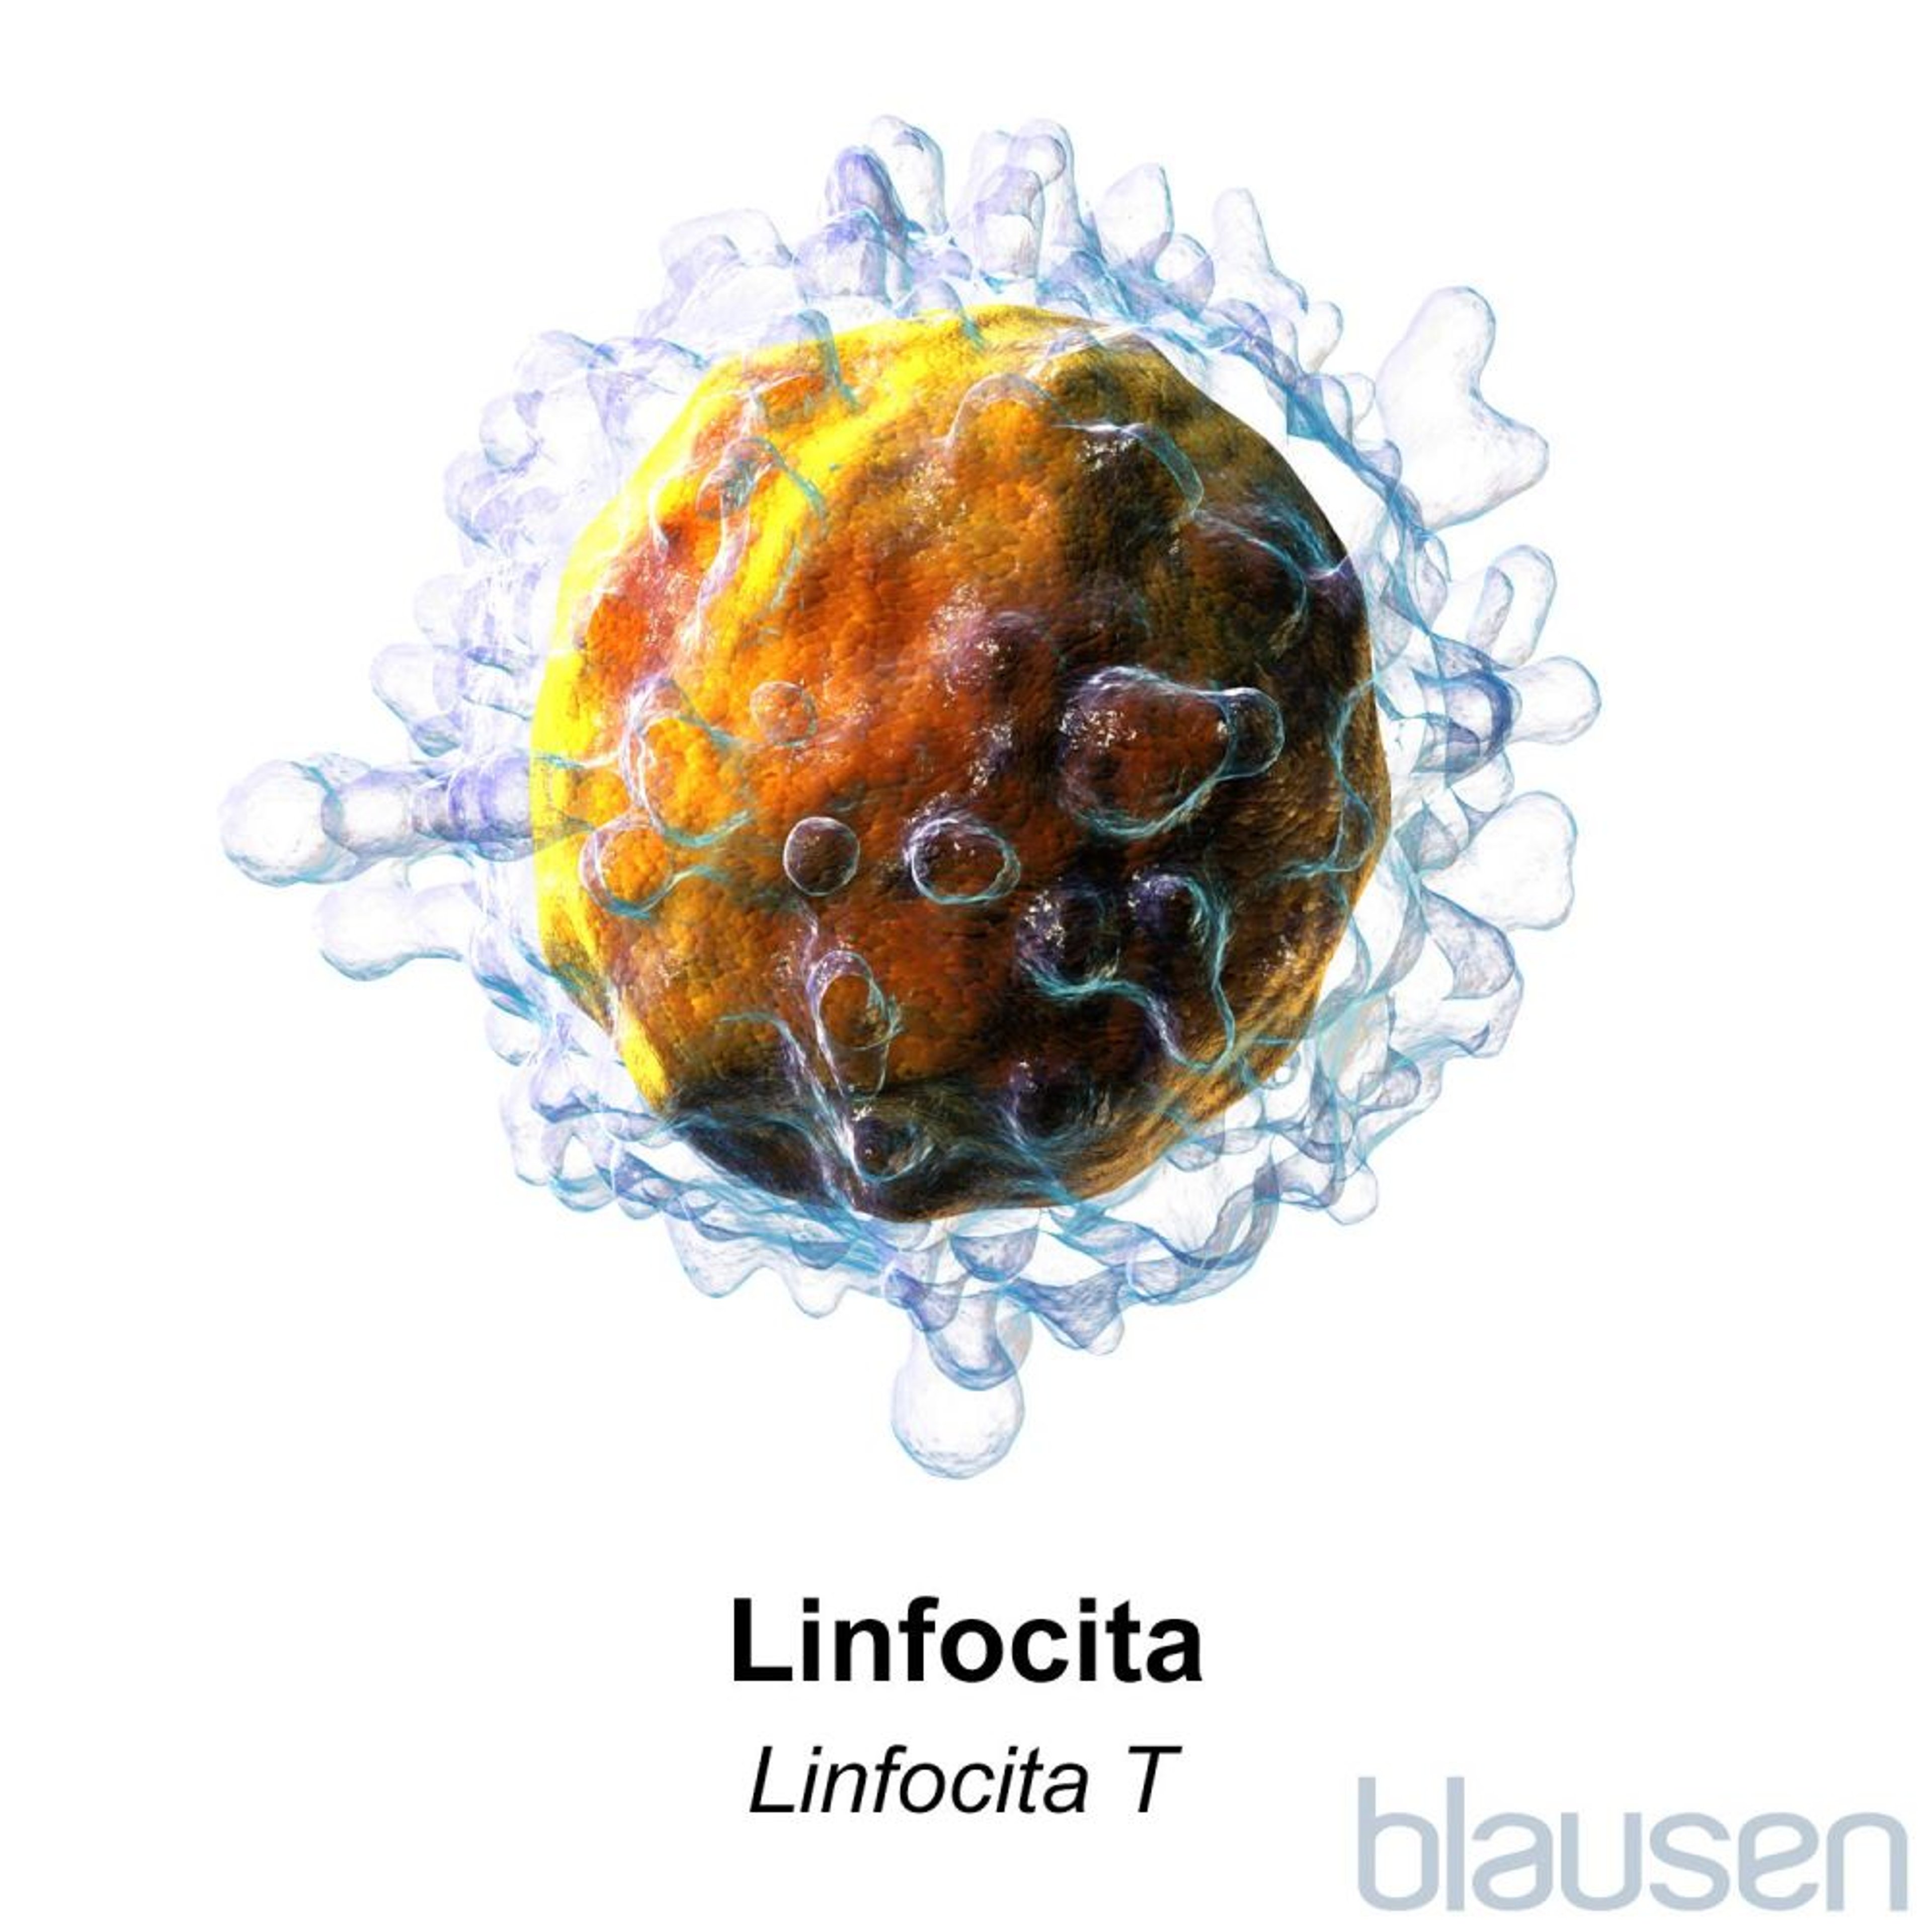 Linfocita T